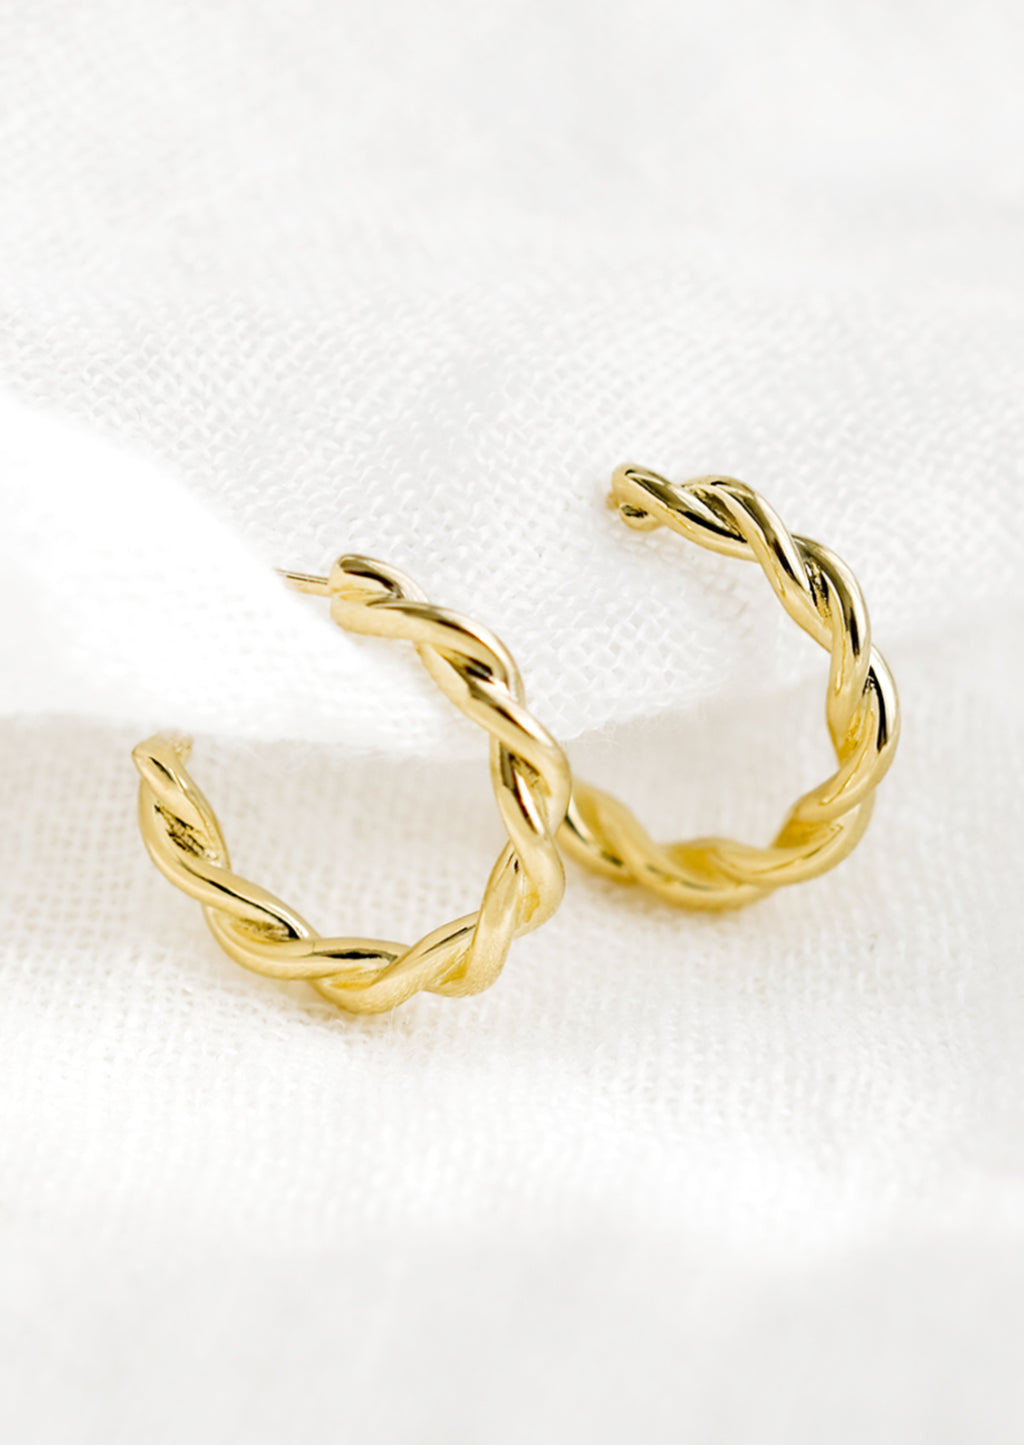 1: A pair of gold twist hoop earrings.